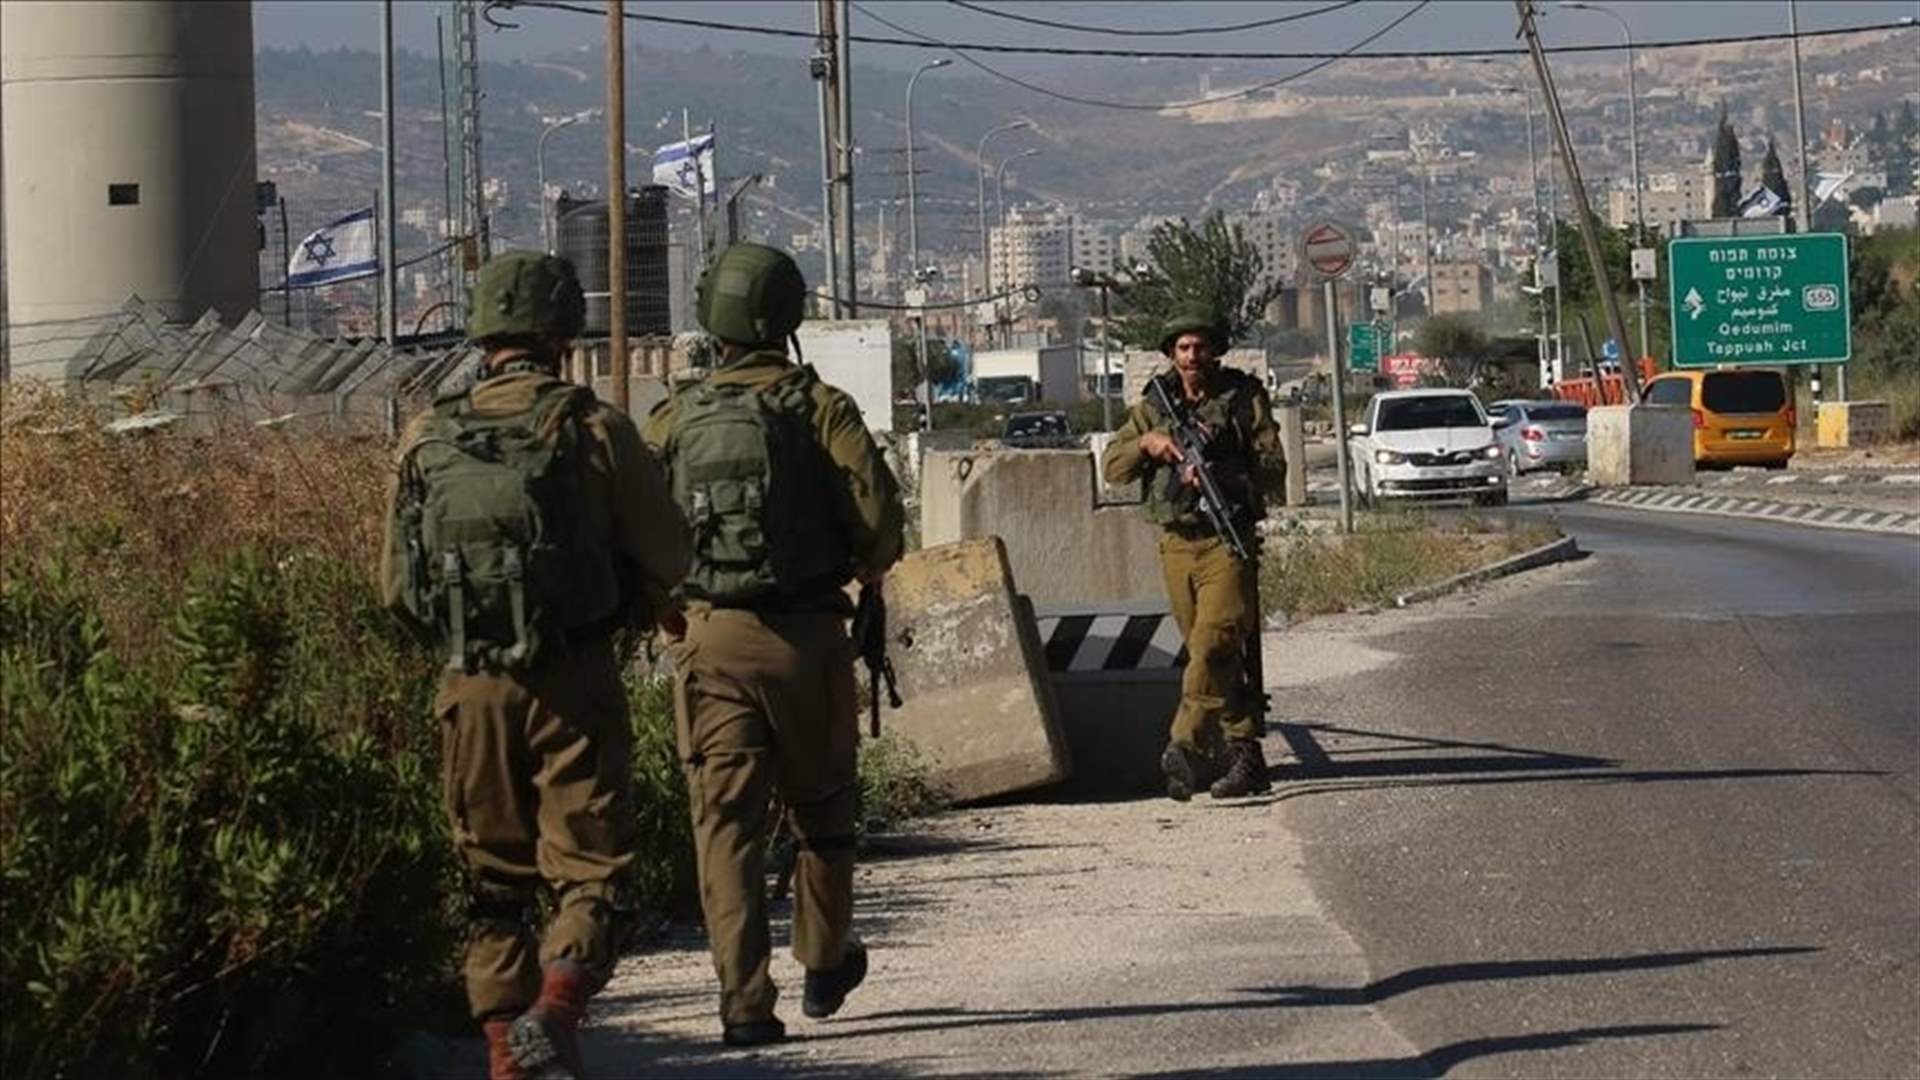 جريحان بعملية طعن في الضفة الغربية والشرطة الاسرائيلية تقتل المهاجم